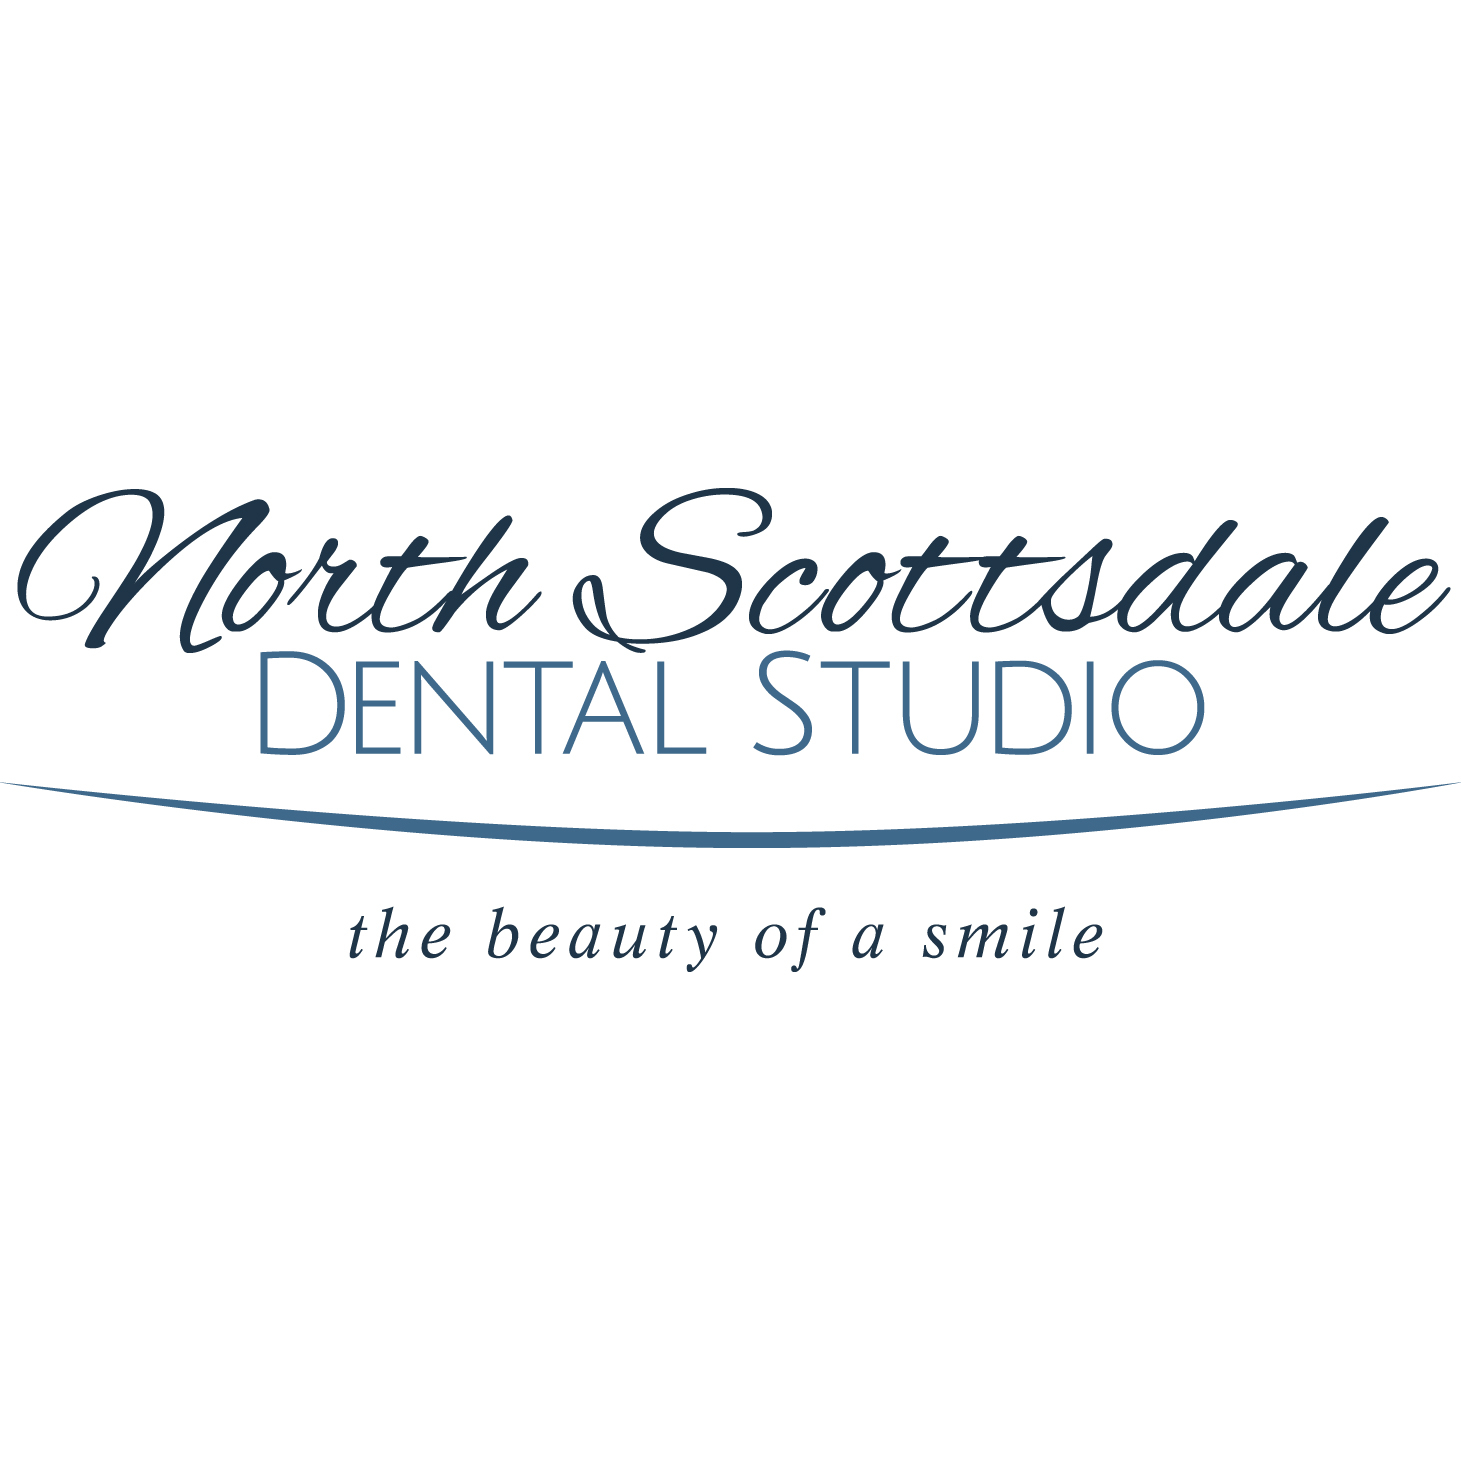 North Scottsdale Dental Studio - Scottsdale, AZ 85260 - (480)538-5210 | ShowMeLocal.com